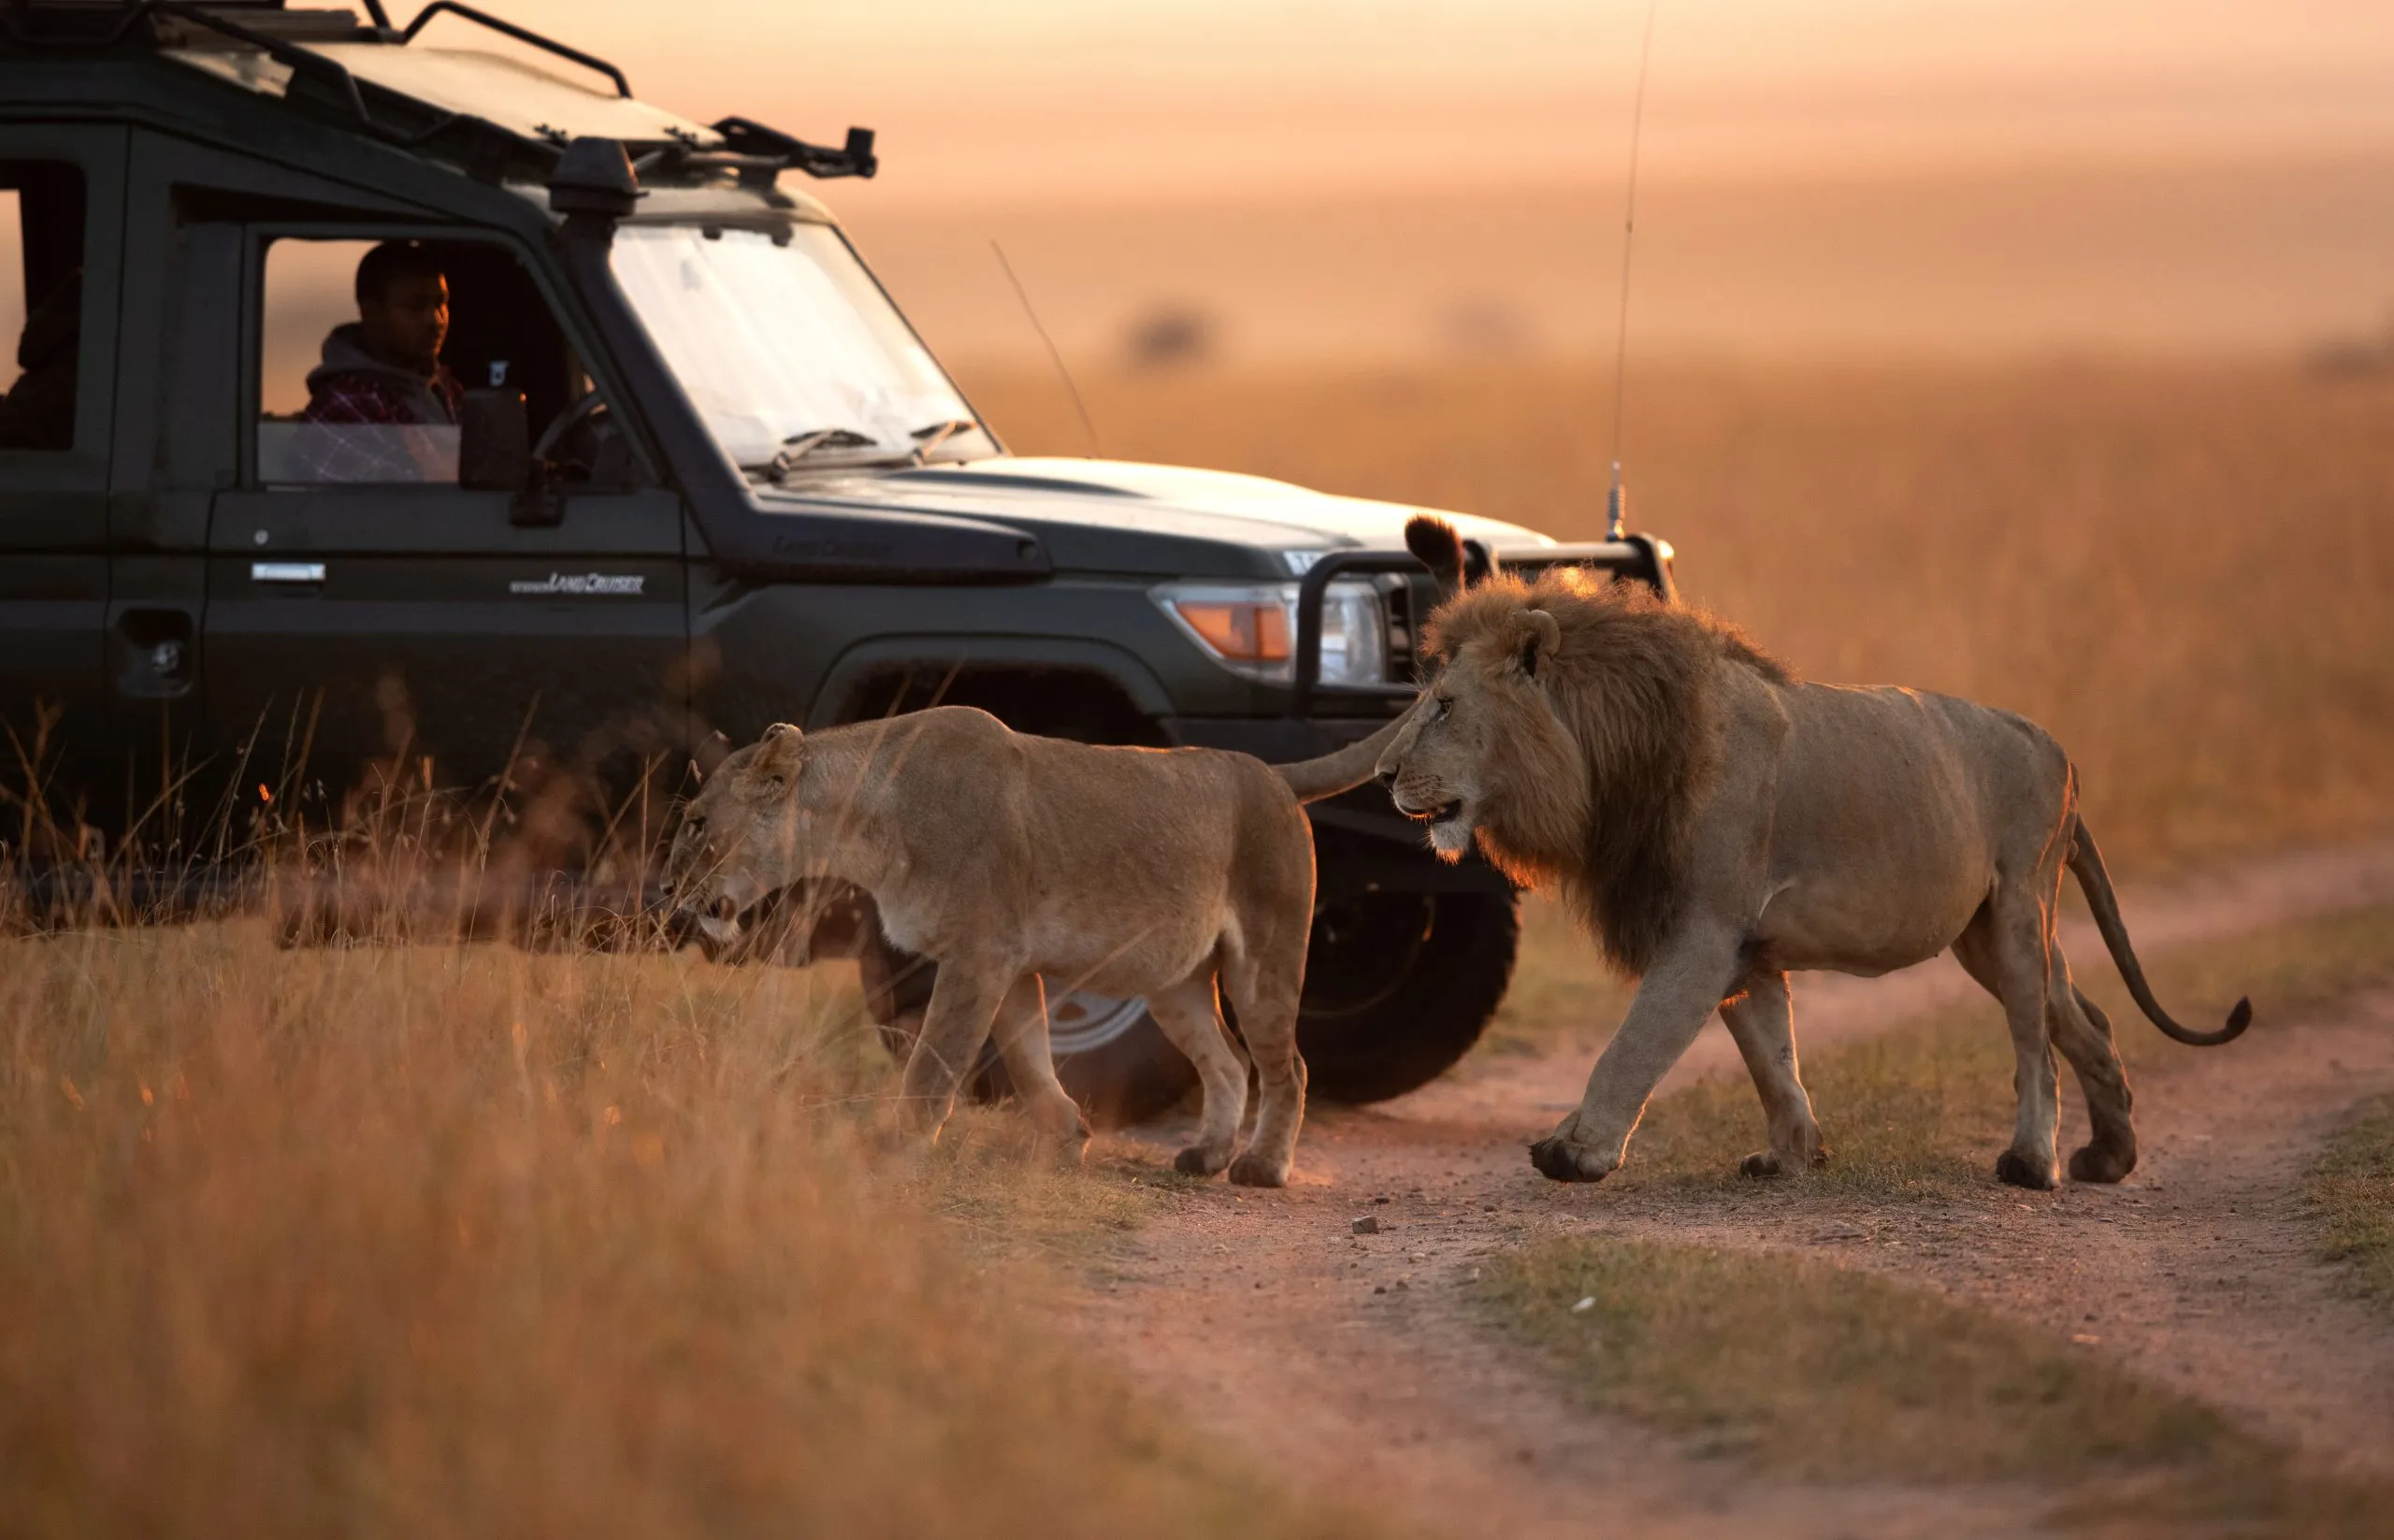 MASAI MARA, KEYNA-SYYSKUU 06: Matkailija katselee leijonaparia liikkumassa Masai Maran kansallispuiston laidunmailla 06. syyskuuta 2022.